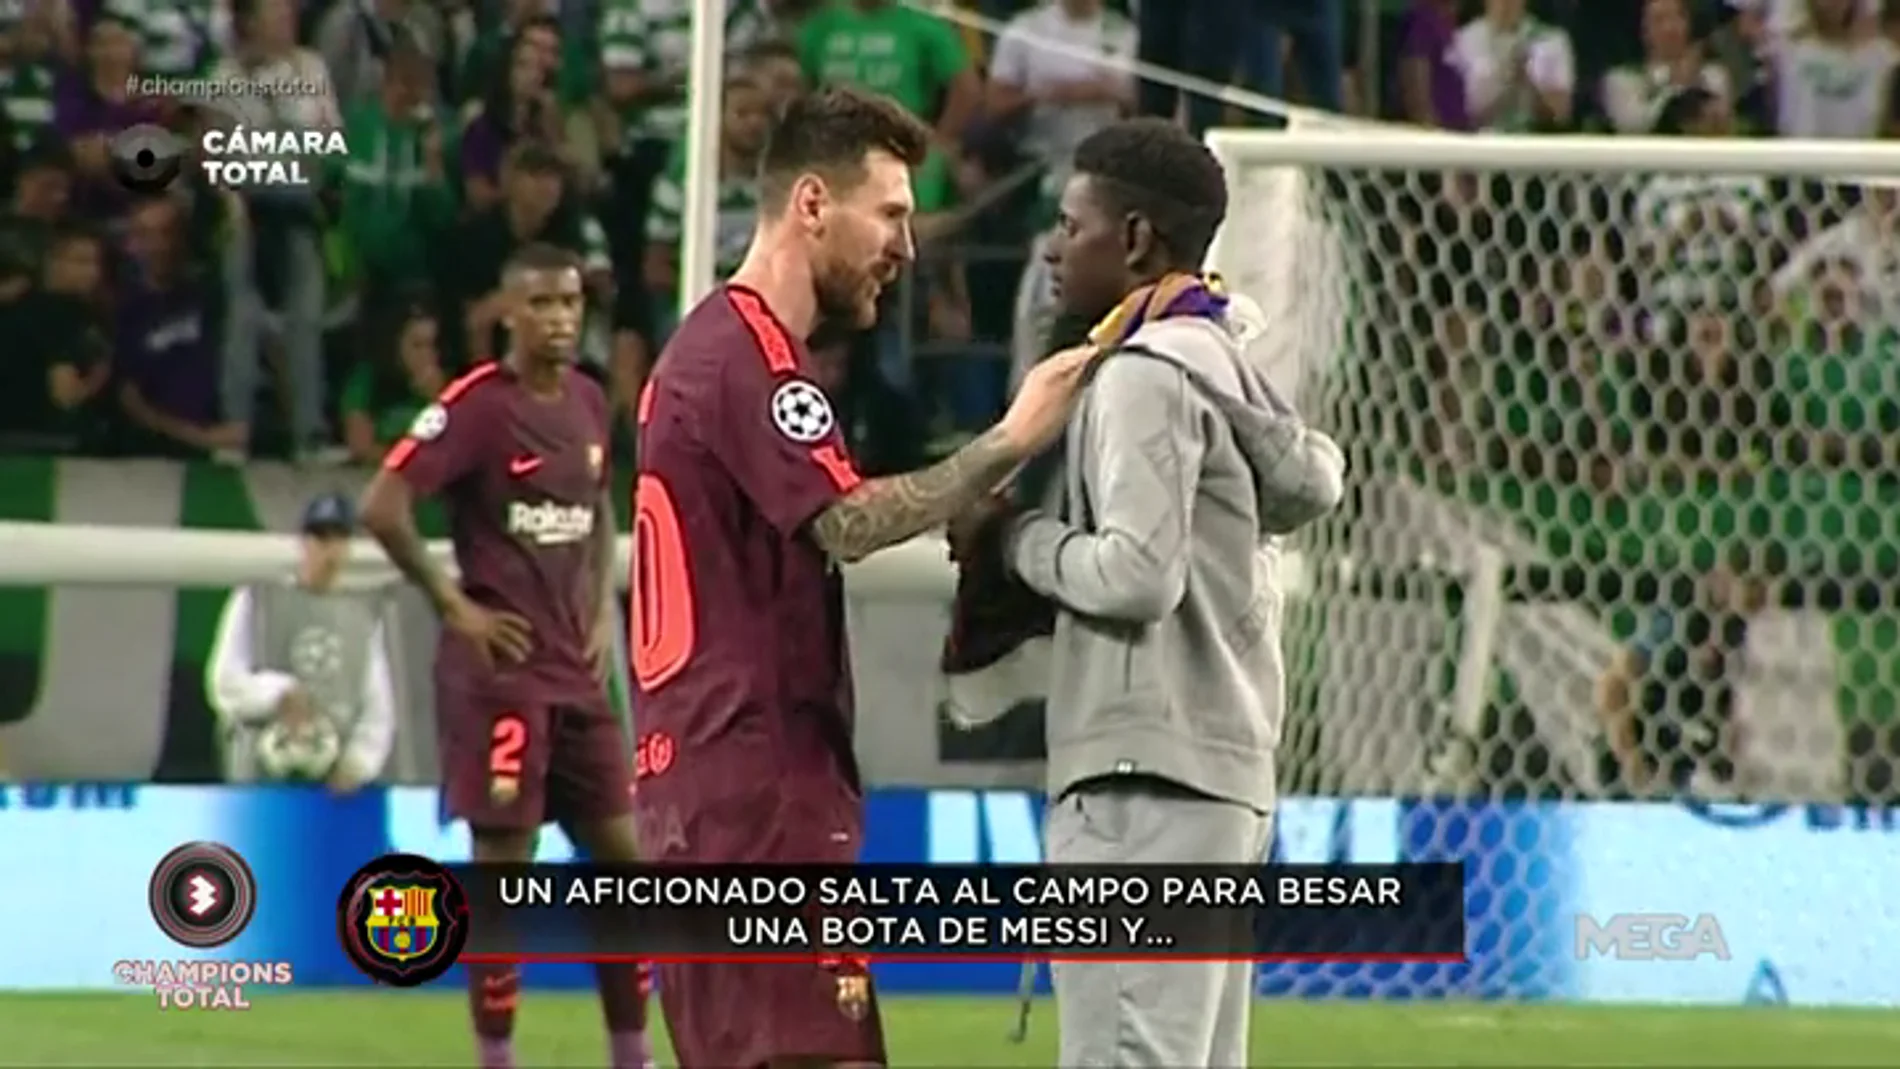 Un aficionado del Sporting salta al campo para besar las botas de Messi... y el estadio estalla: "¡Cristiano Ronaldo!"